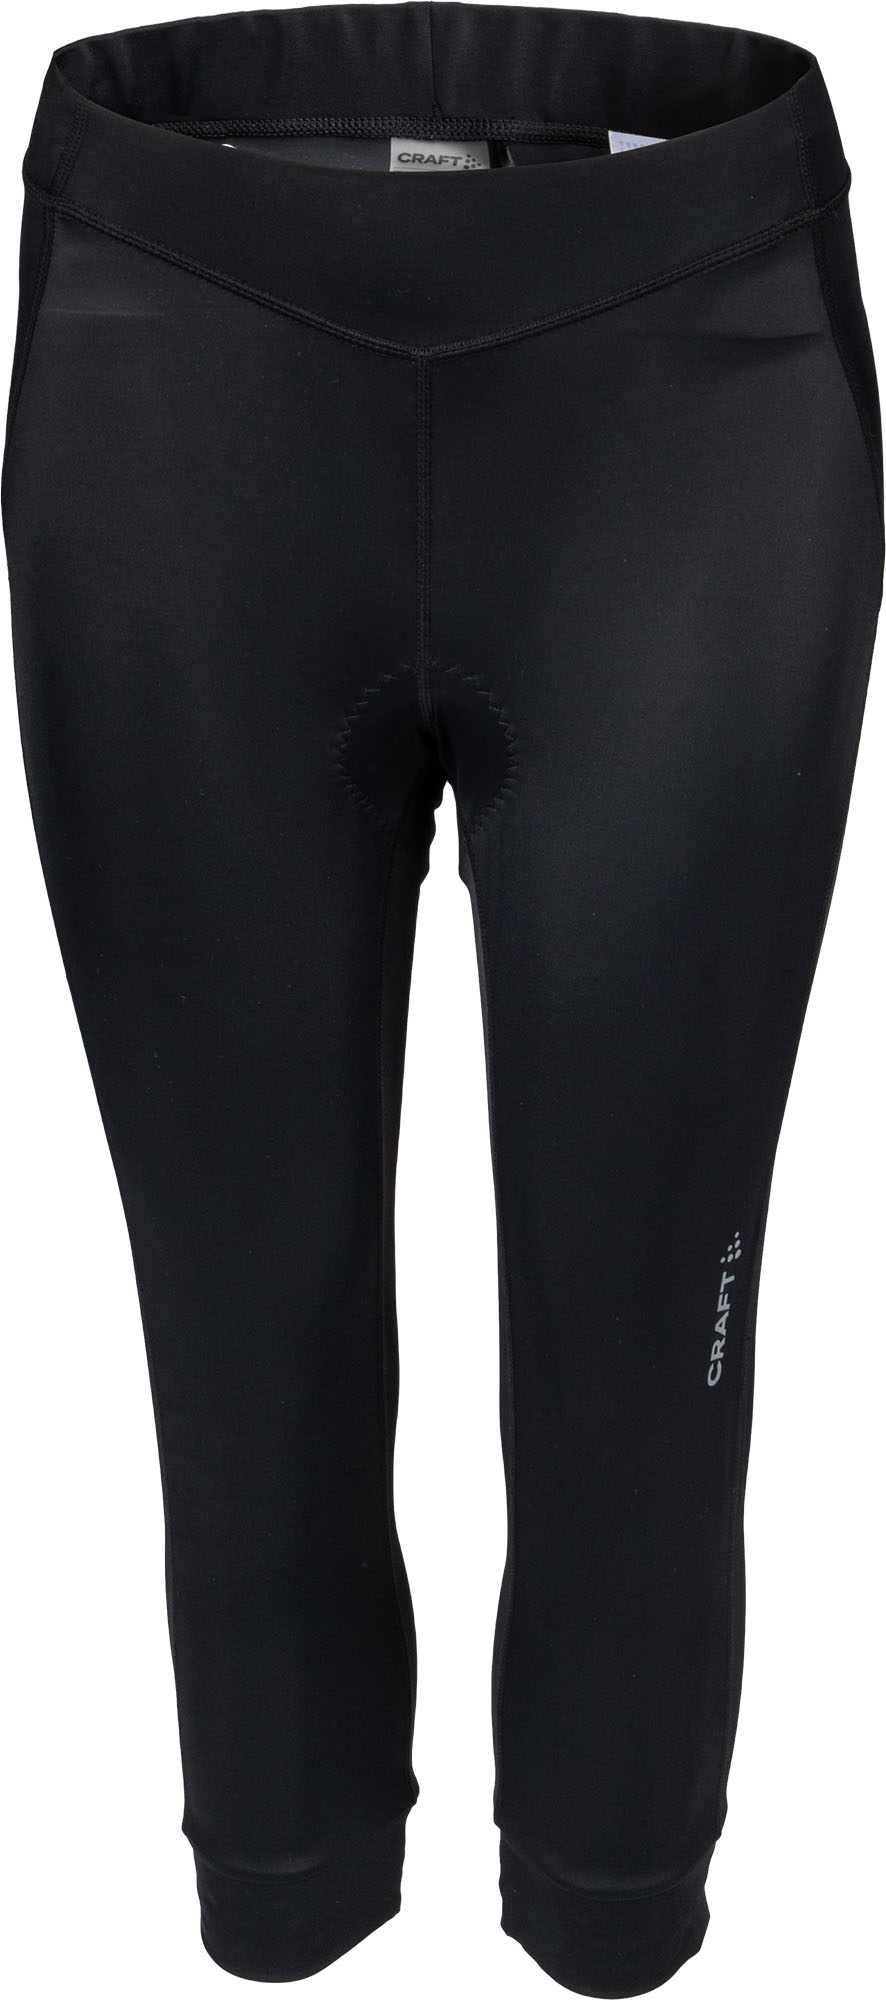 Women’s 3/4 length cycling pants